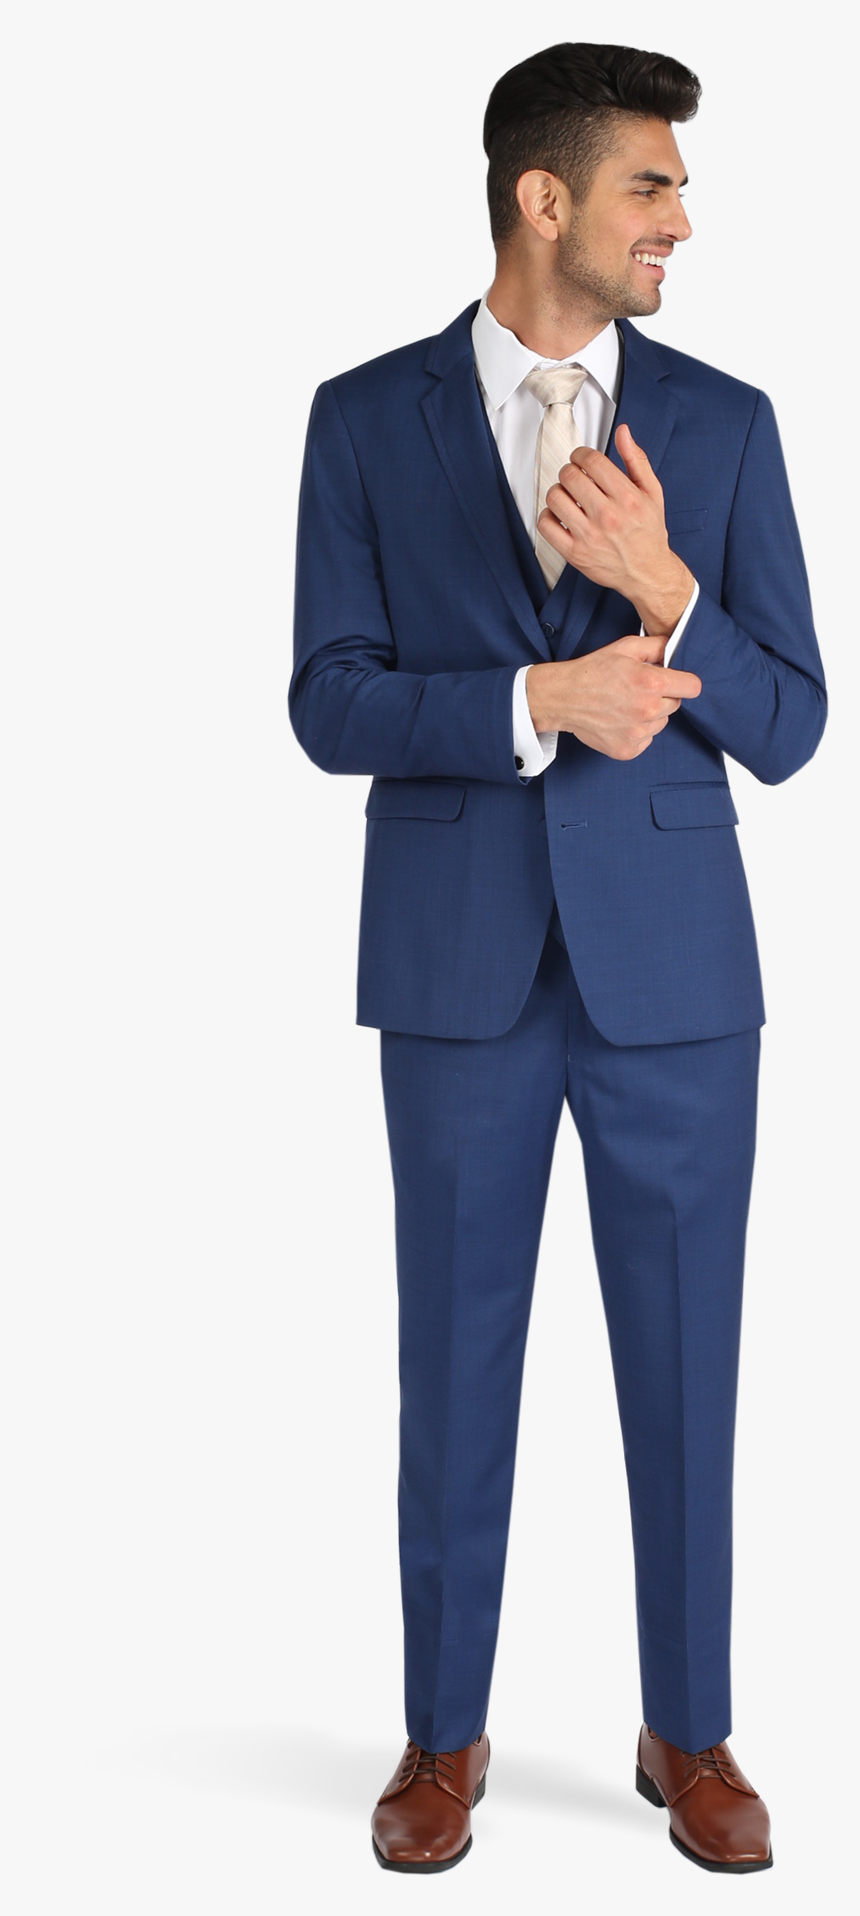 Cobalt Blue Suit Allure Men Online Suit Rental - Friar Tux Cobalt Blue Suit, HD Png Download, Free Download